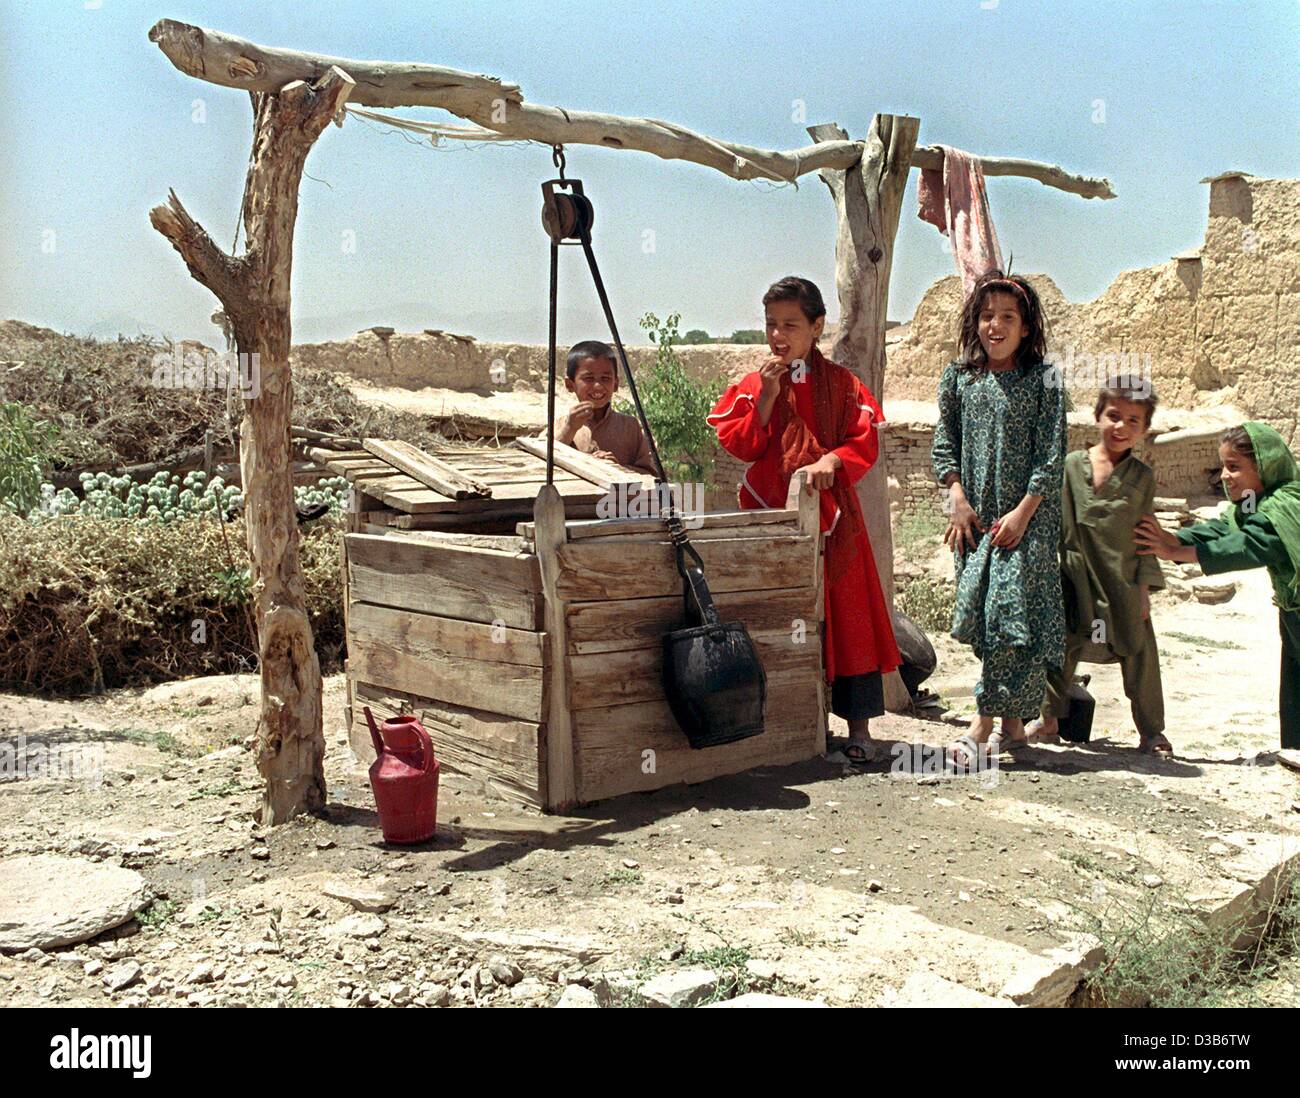 (Dpa) - bambini afgani gioco intorno a un bene nel primo campo profughi vicino a Kabul, gestito dalla GTZ (tedesco 'Gesellschaft für Technische Zusammenarbeit' - "la società per la cooperazione tecnica"), Giugno 2002. Più di un milione di rifugiati sono rientrati in Afghanistan, ma il paese deve far fronte a un duraturo financ Foto Stock